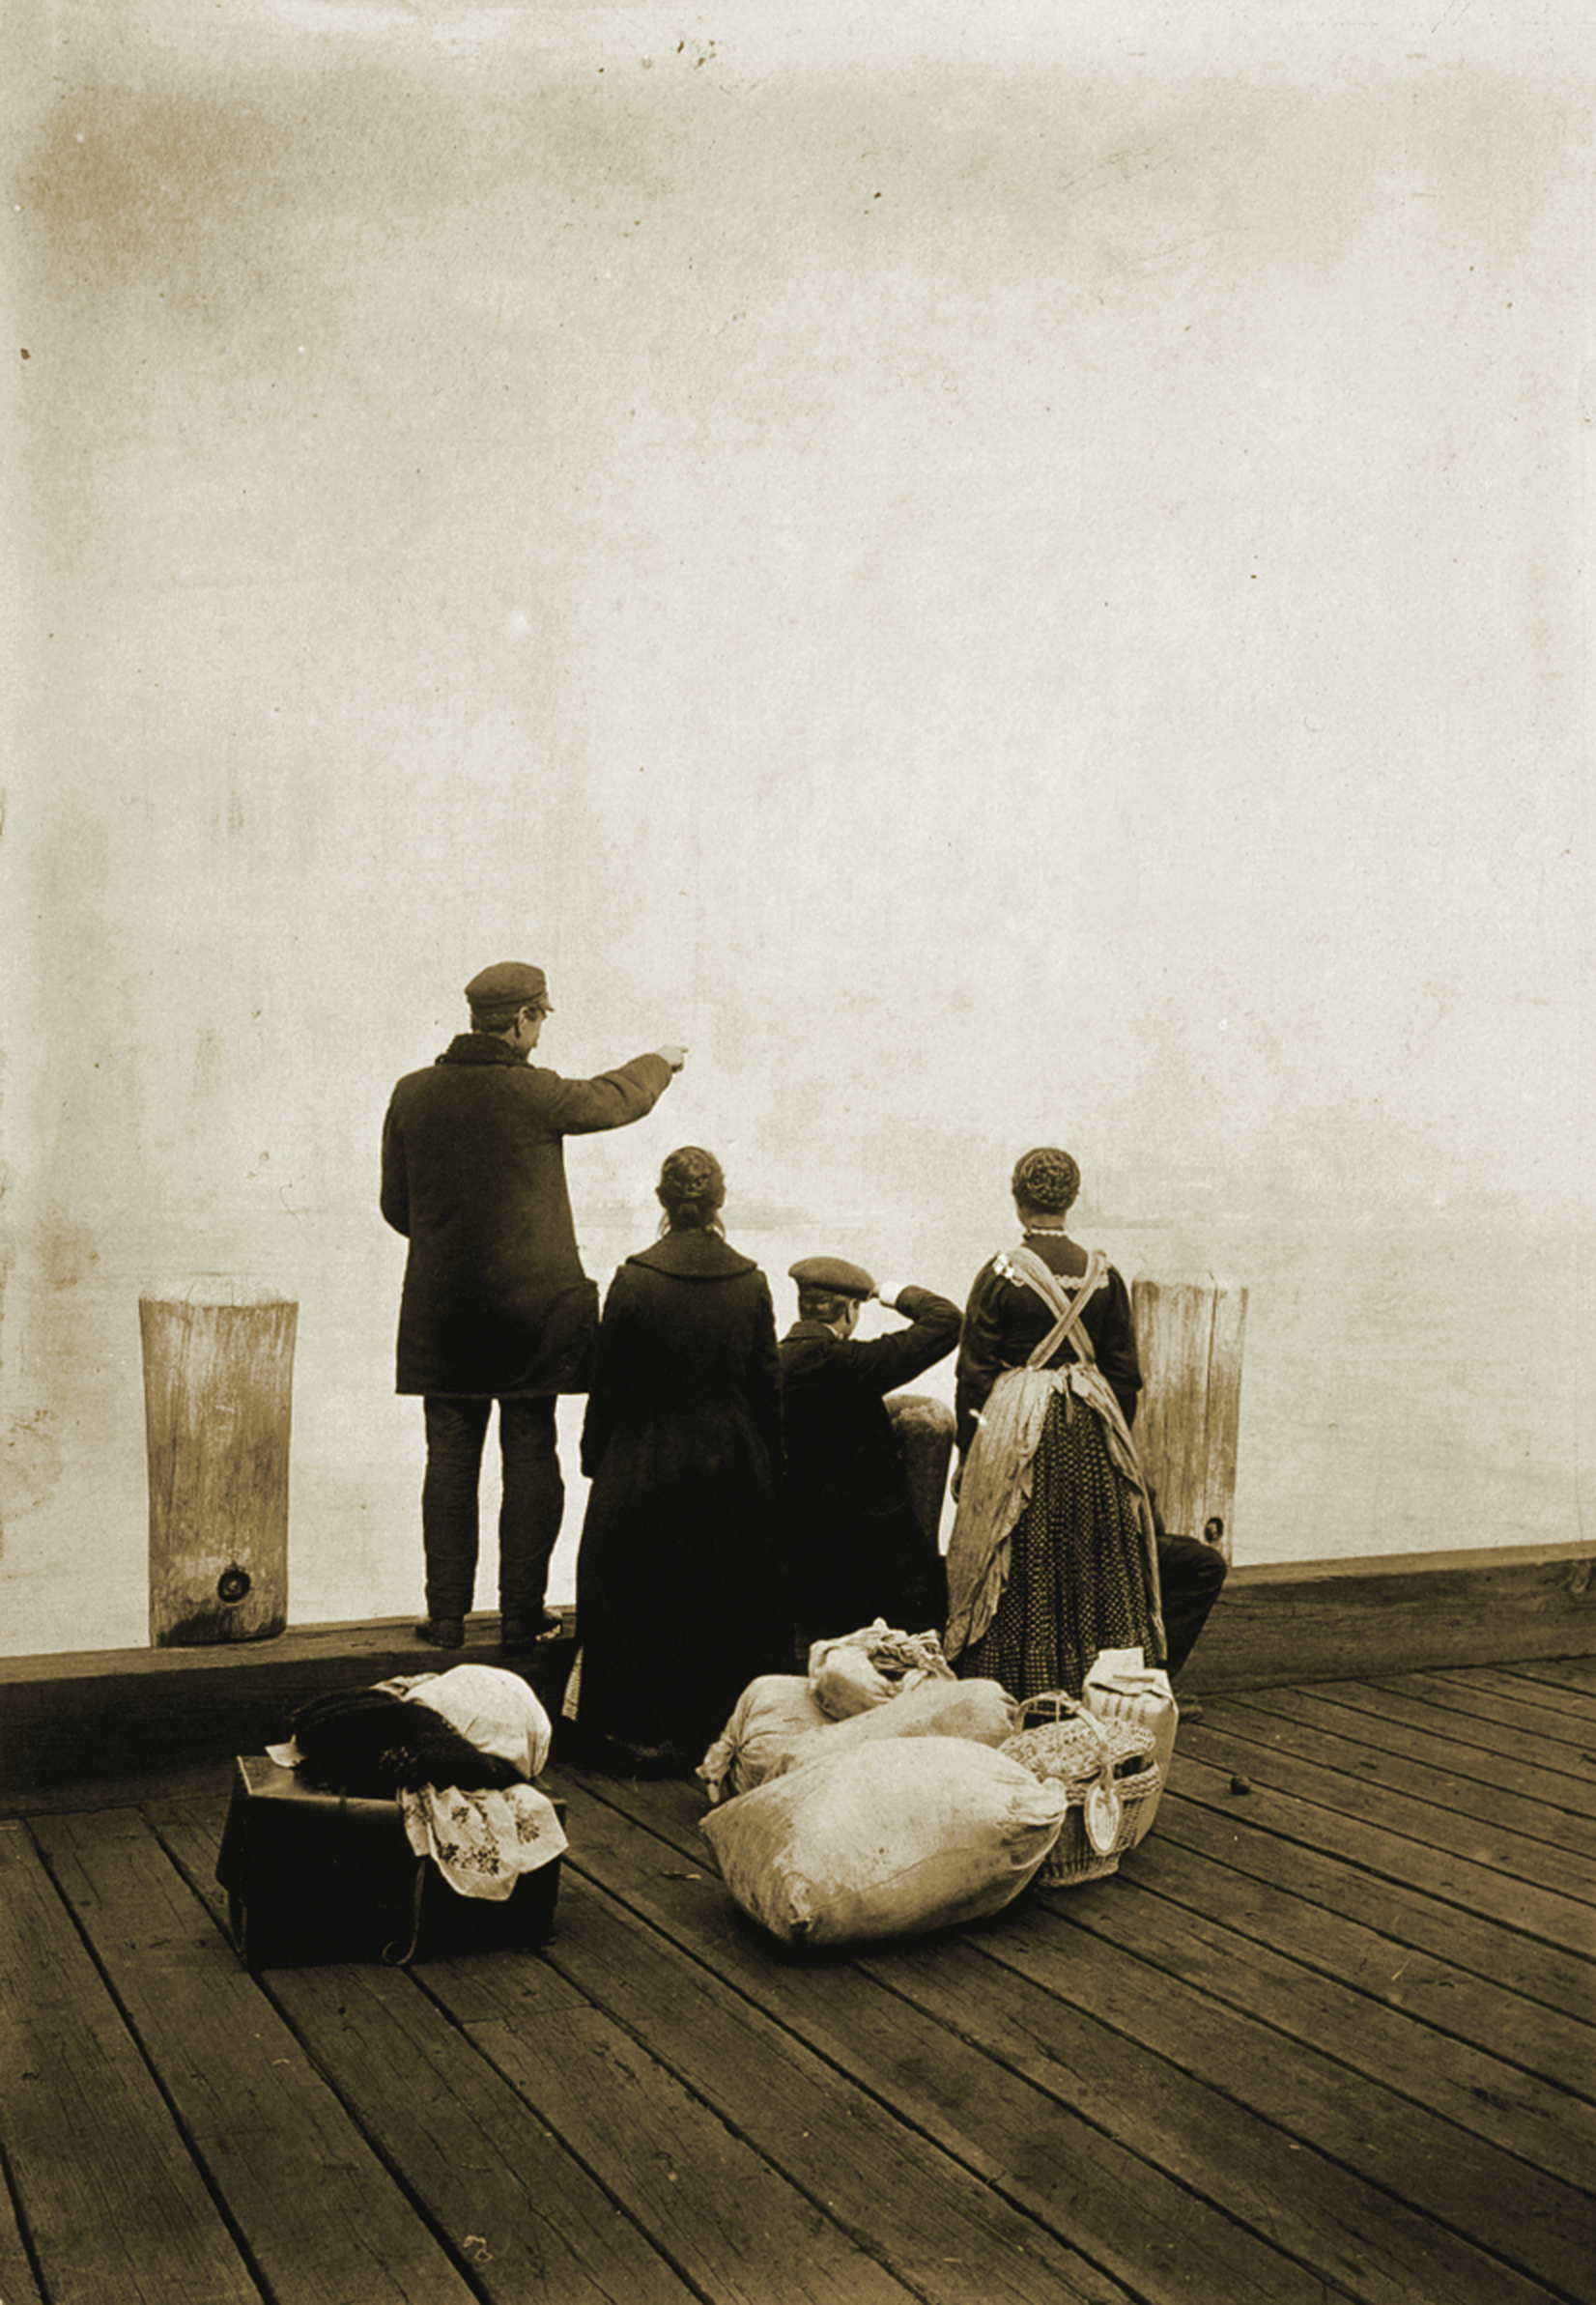 Four immigrants on Ellis Island